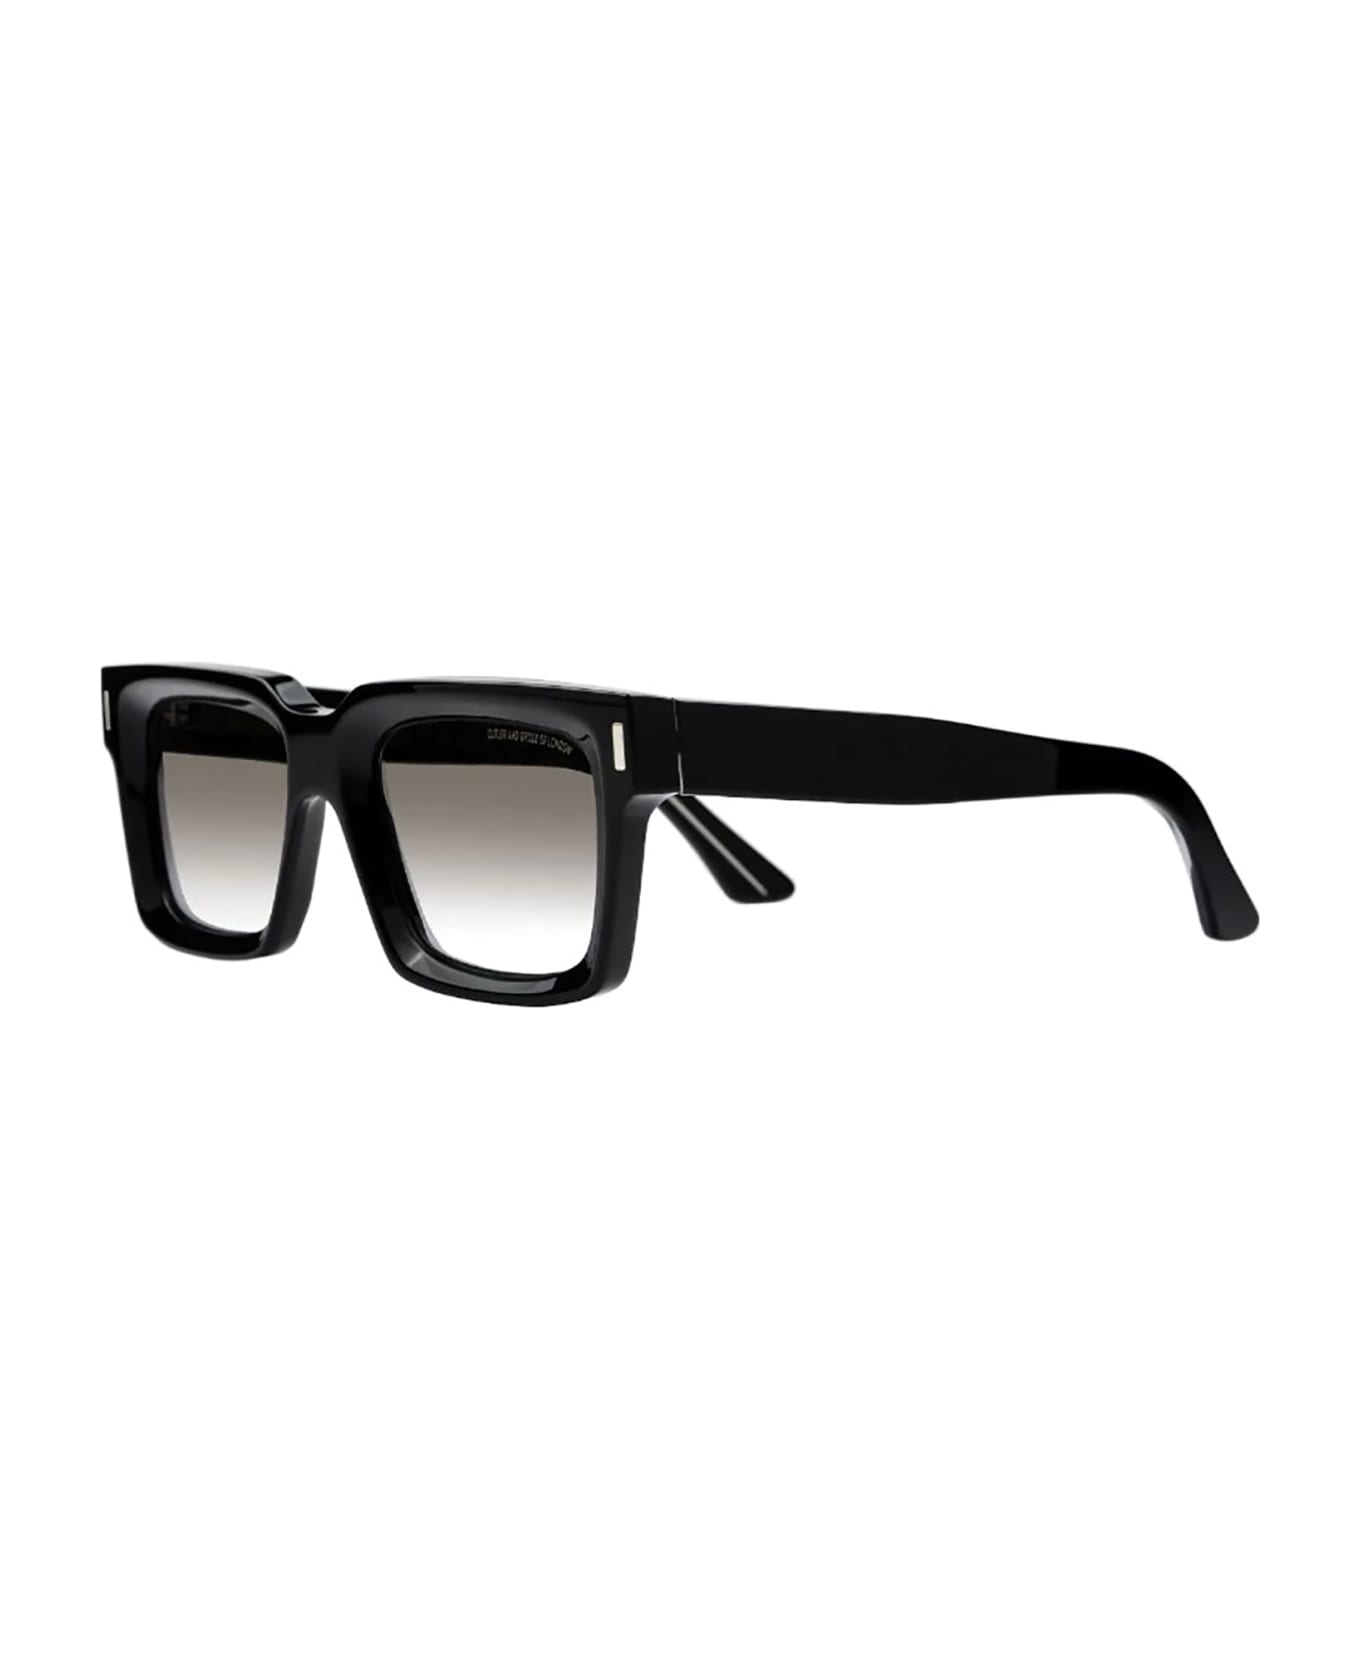 Cutler and Gross 1386 Eyewear - Black(sun)